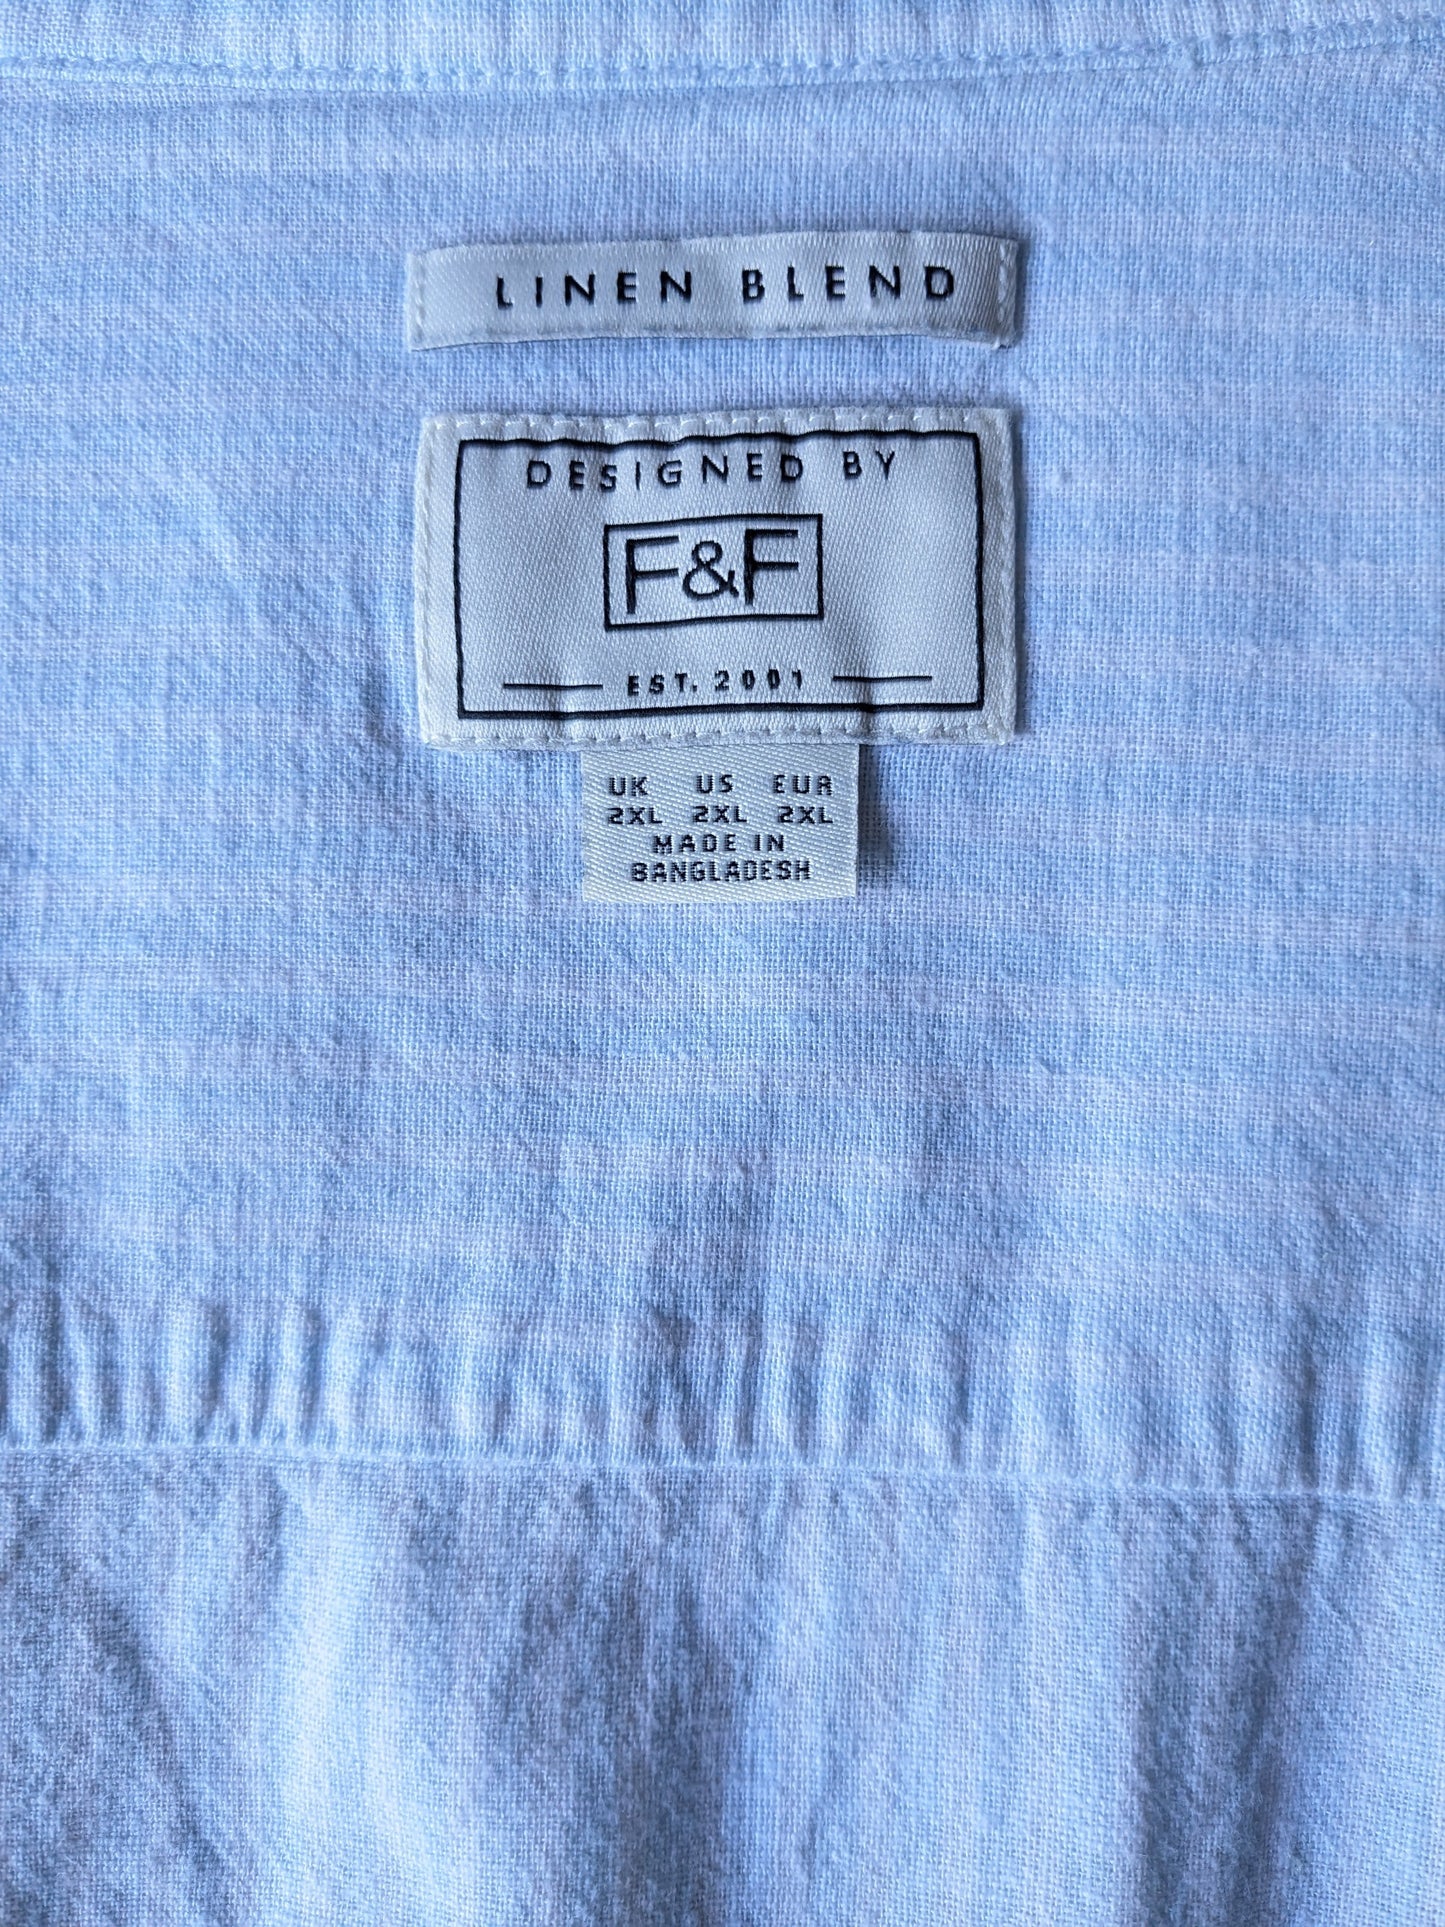 F&F Camisa de lino con cuello corto. Blanco azul rayado. Tamaño XXL / 2XL.